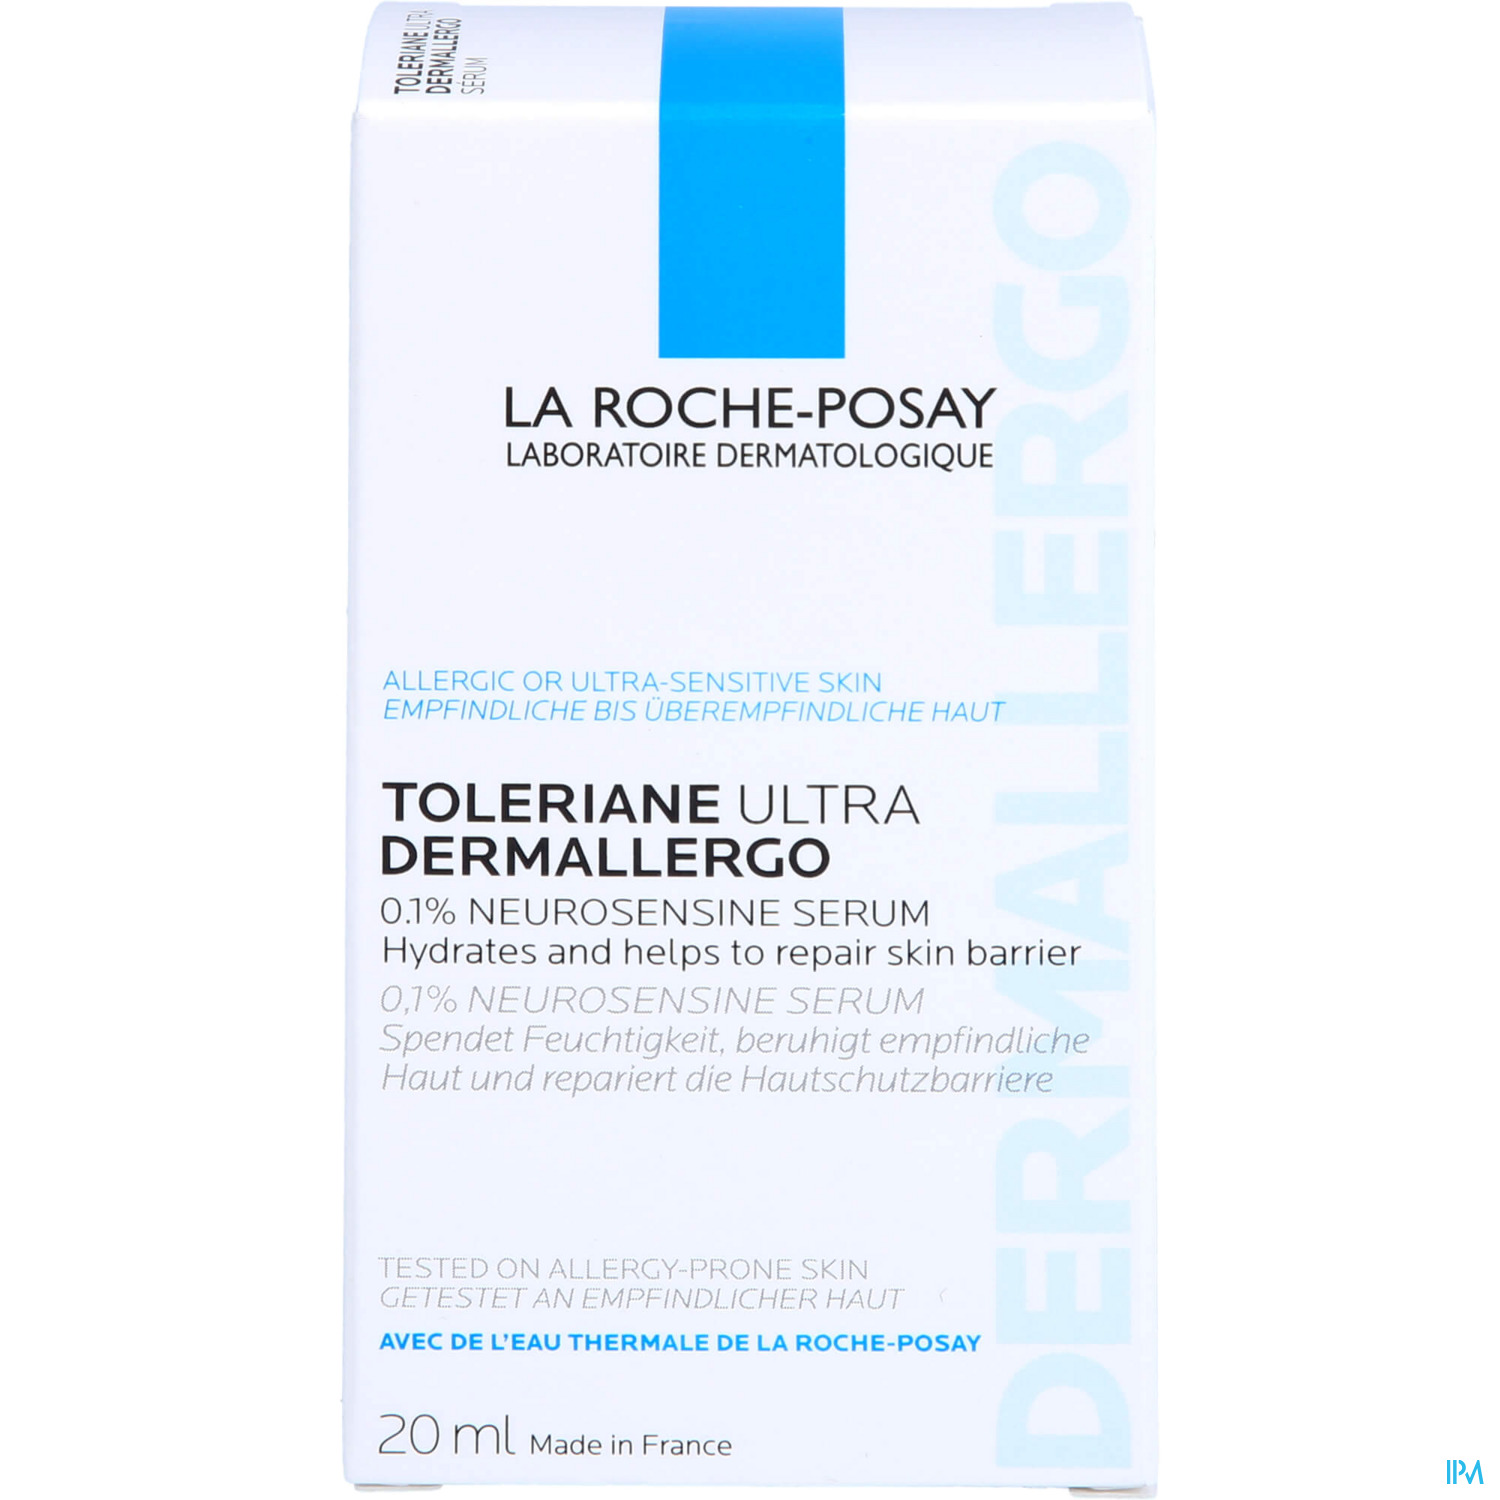 LA ROCHE TOLERIAN DERMALLERG 20ML